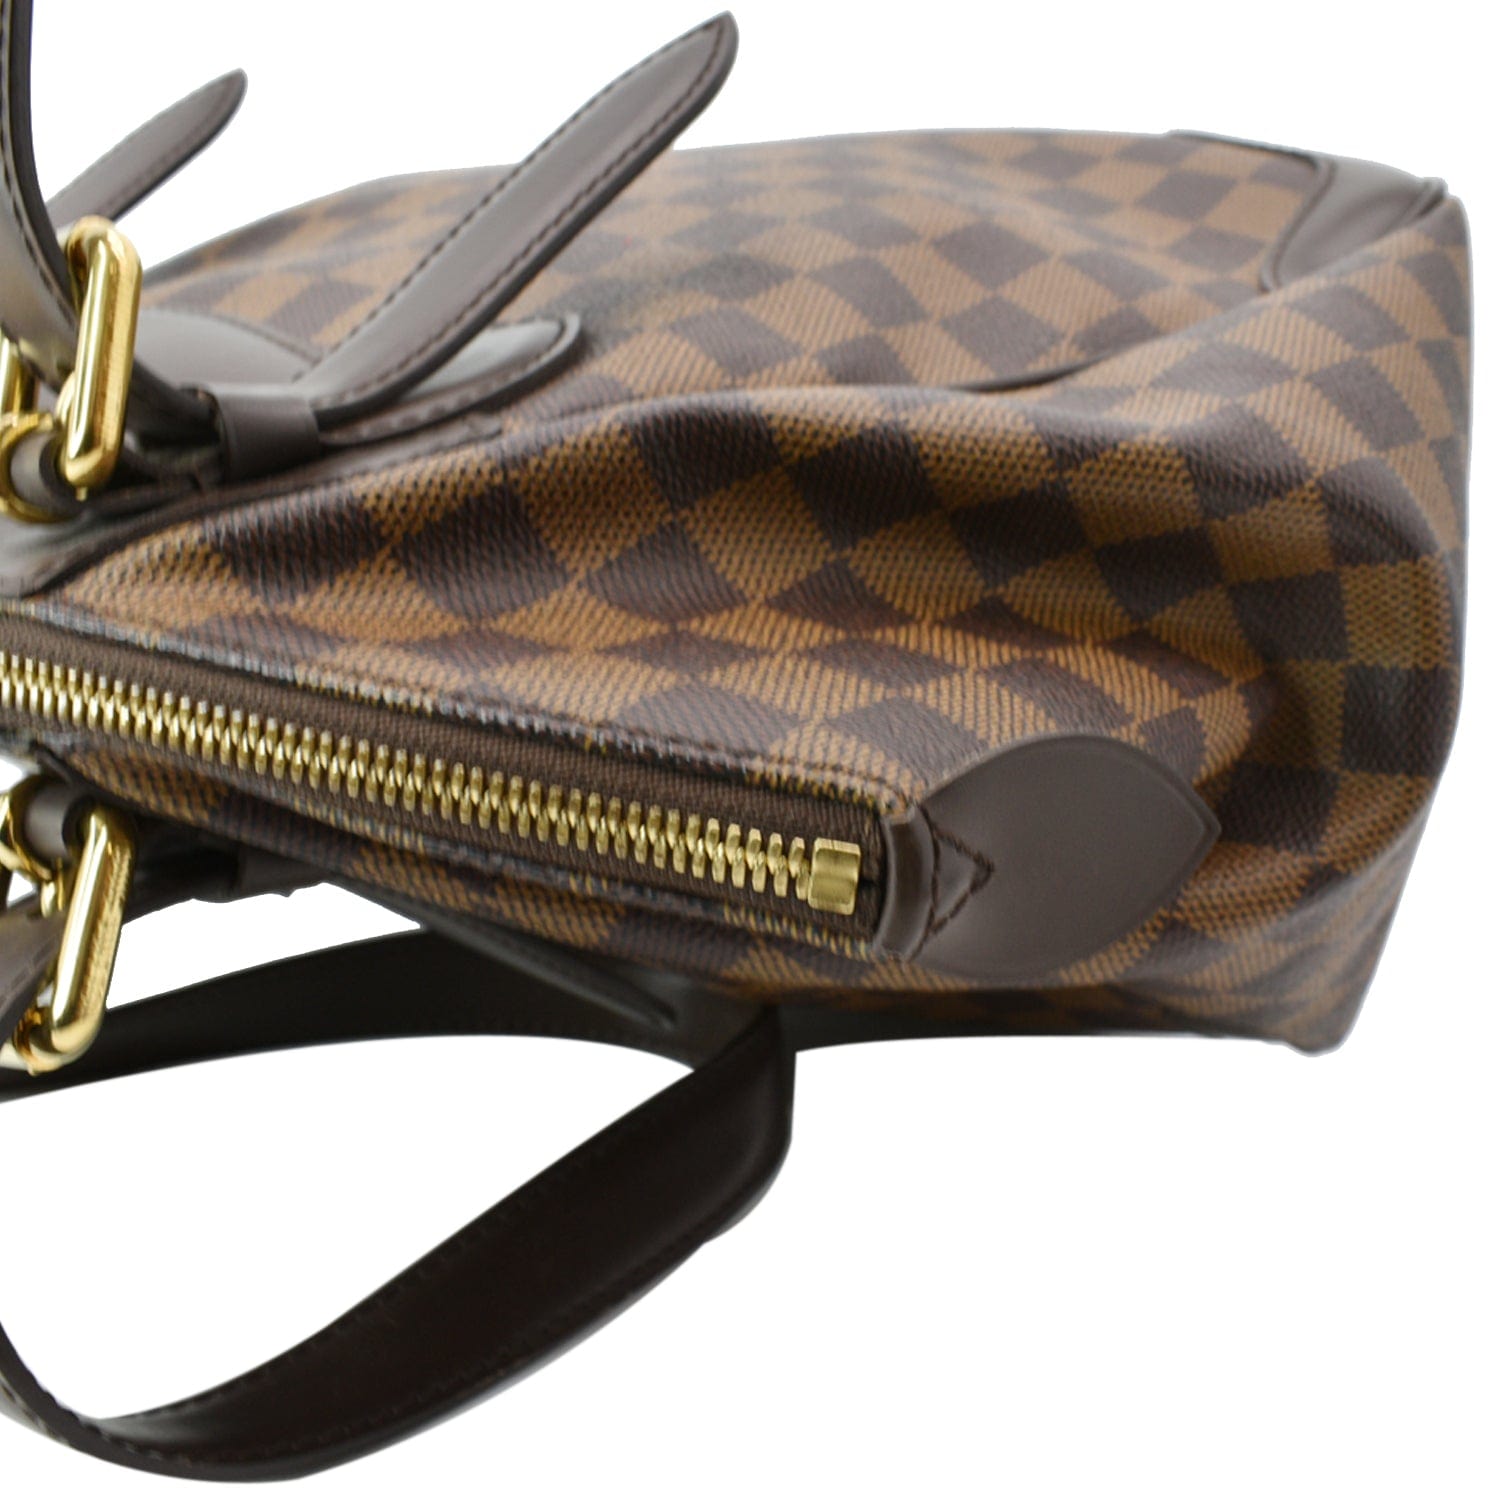 Louis Vuitton Verona MM Damier Ebene Canvas Leather Shoulder Bag